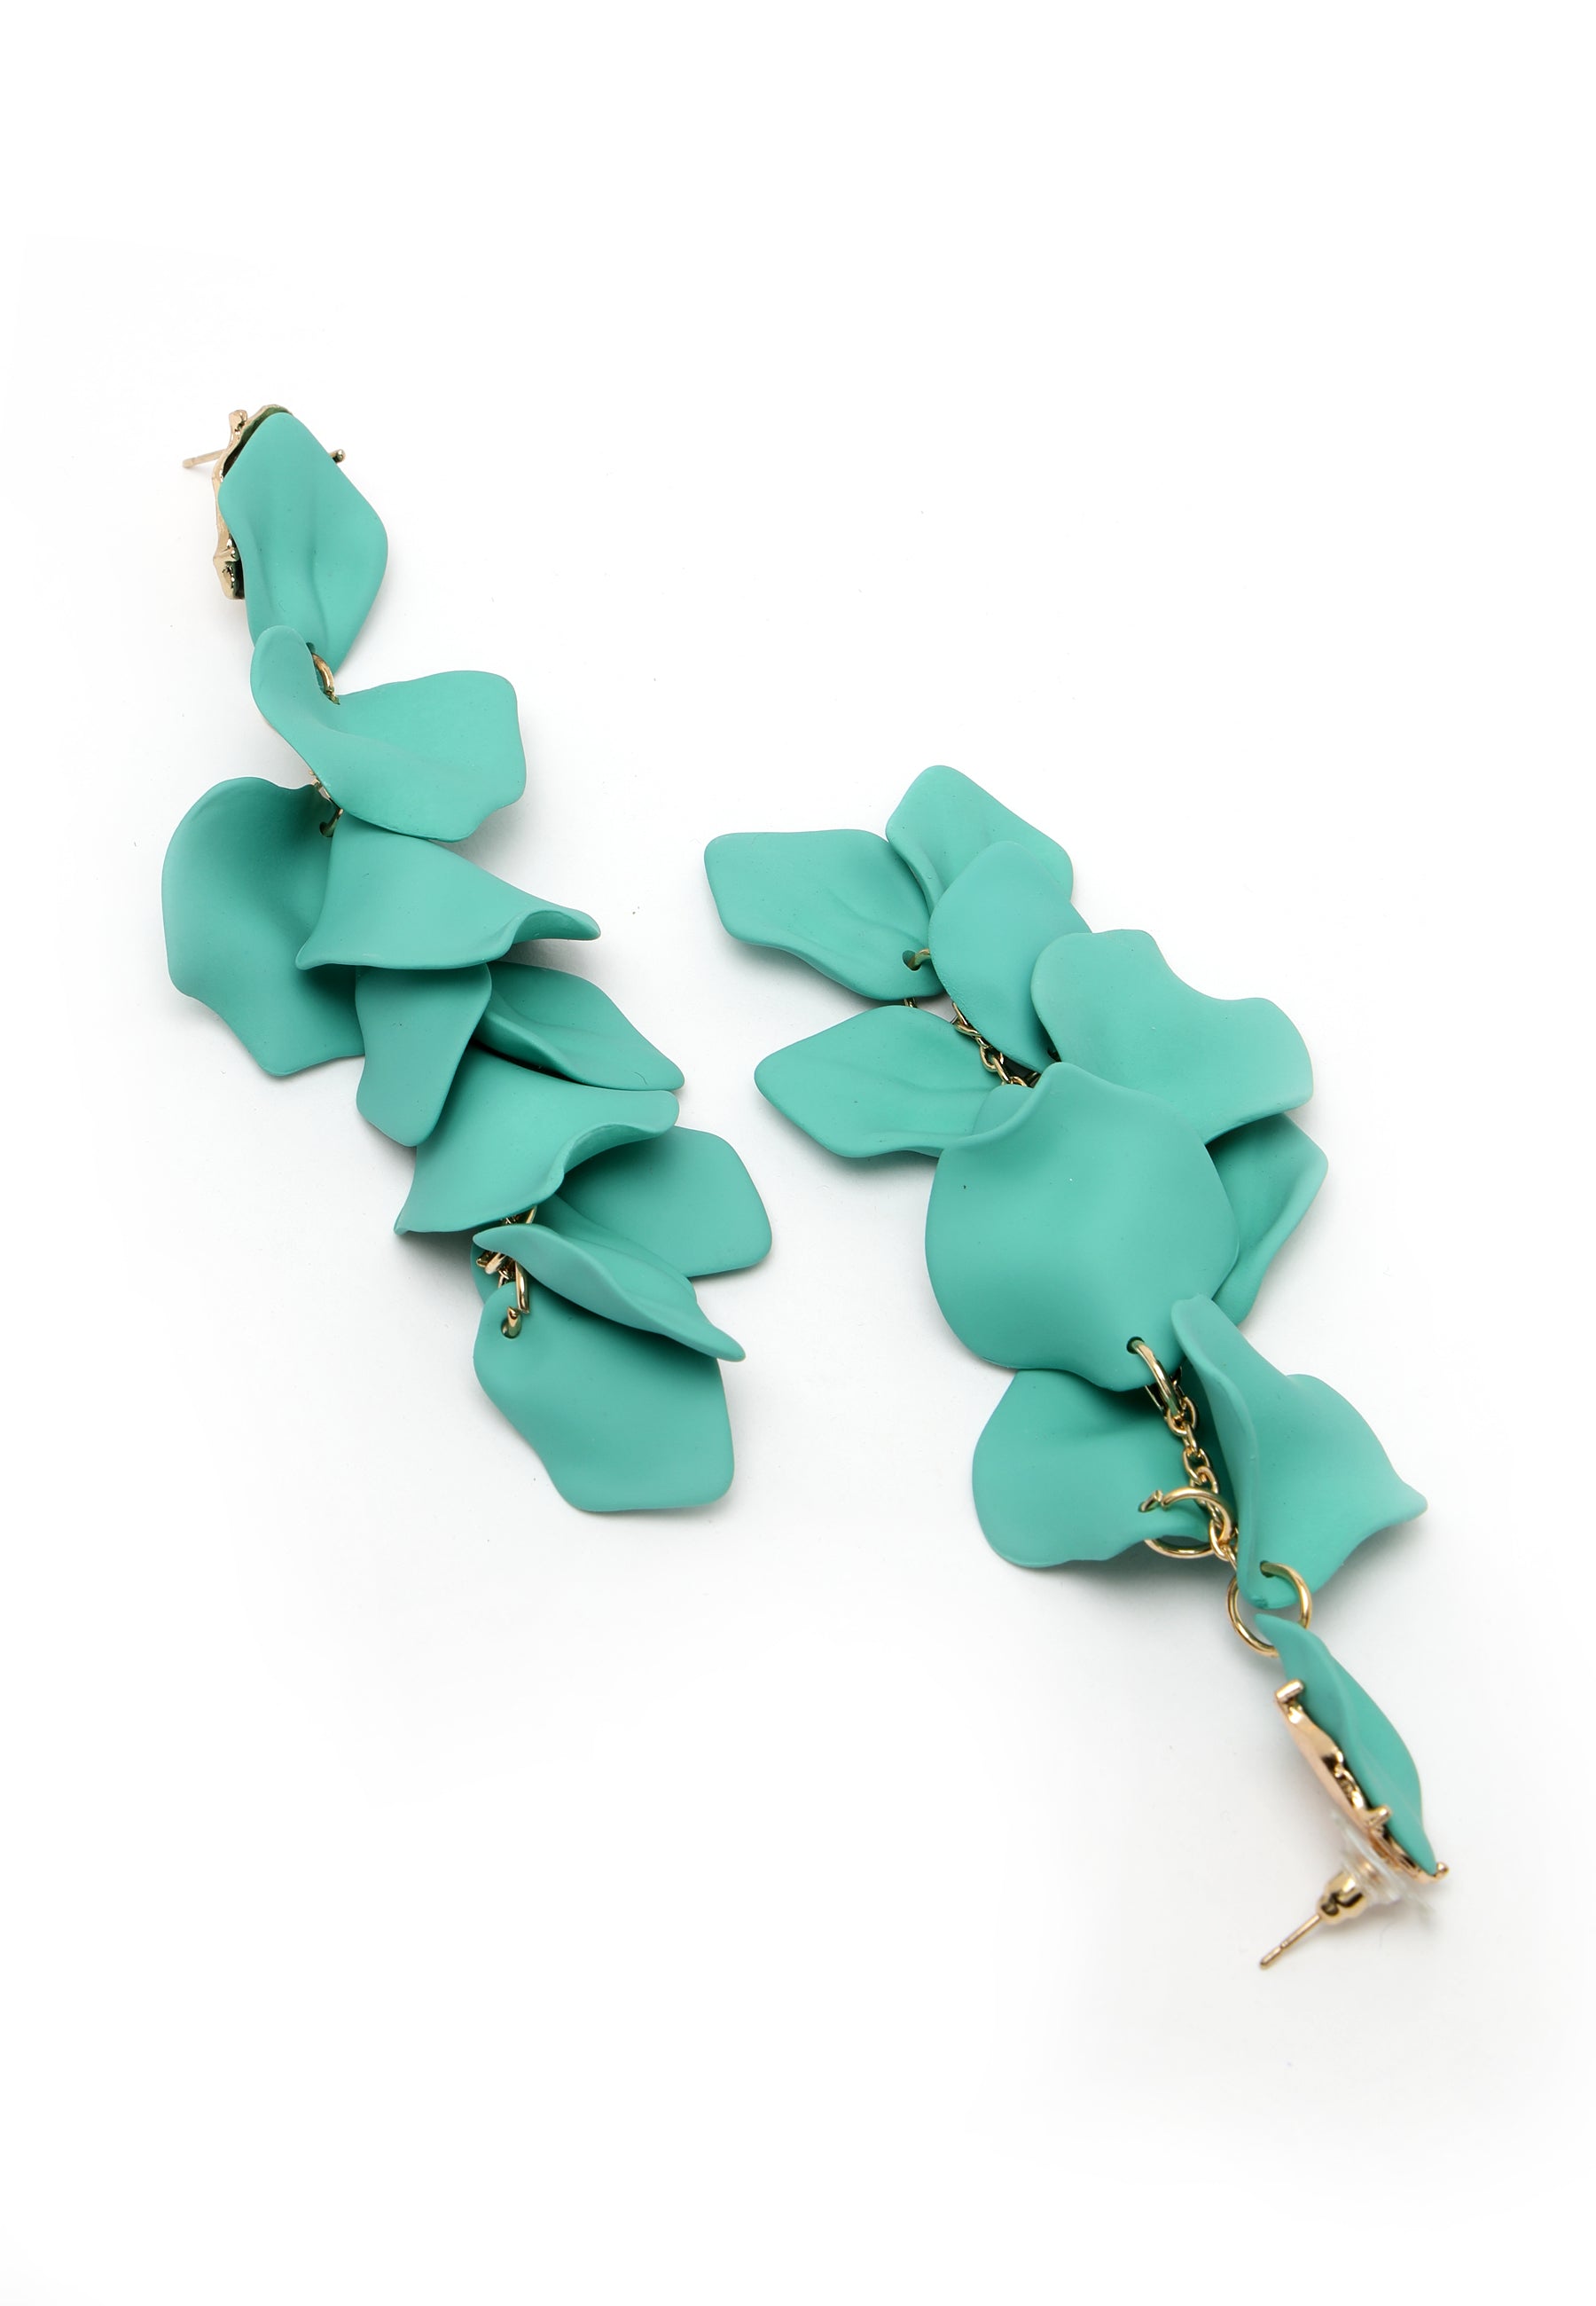 Turquoise blauwe roos bloemblaadje vormige Danglers oorbellen